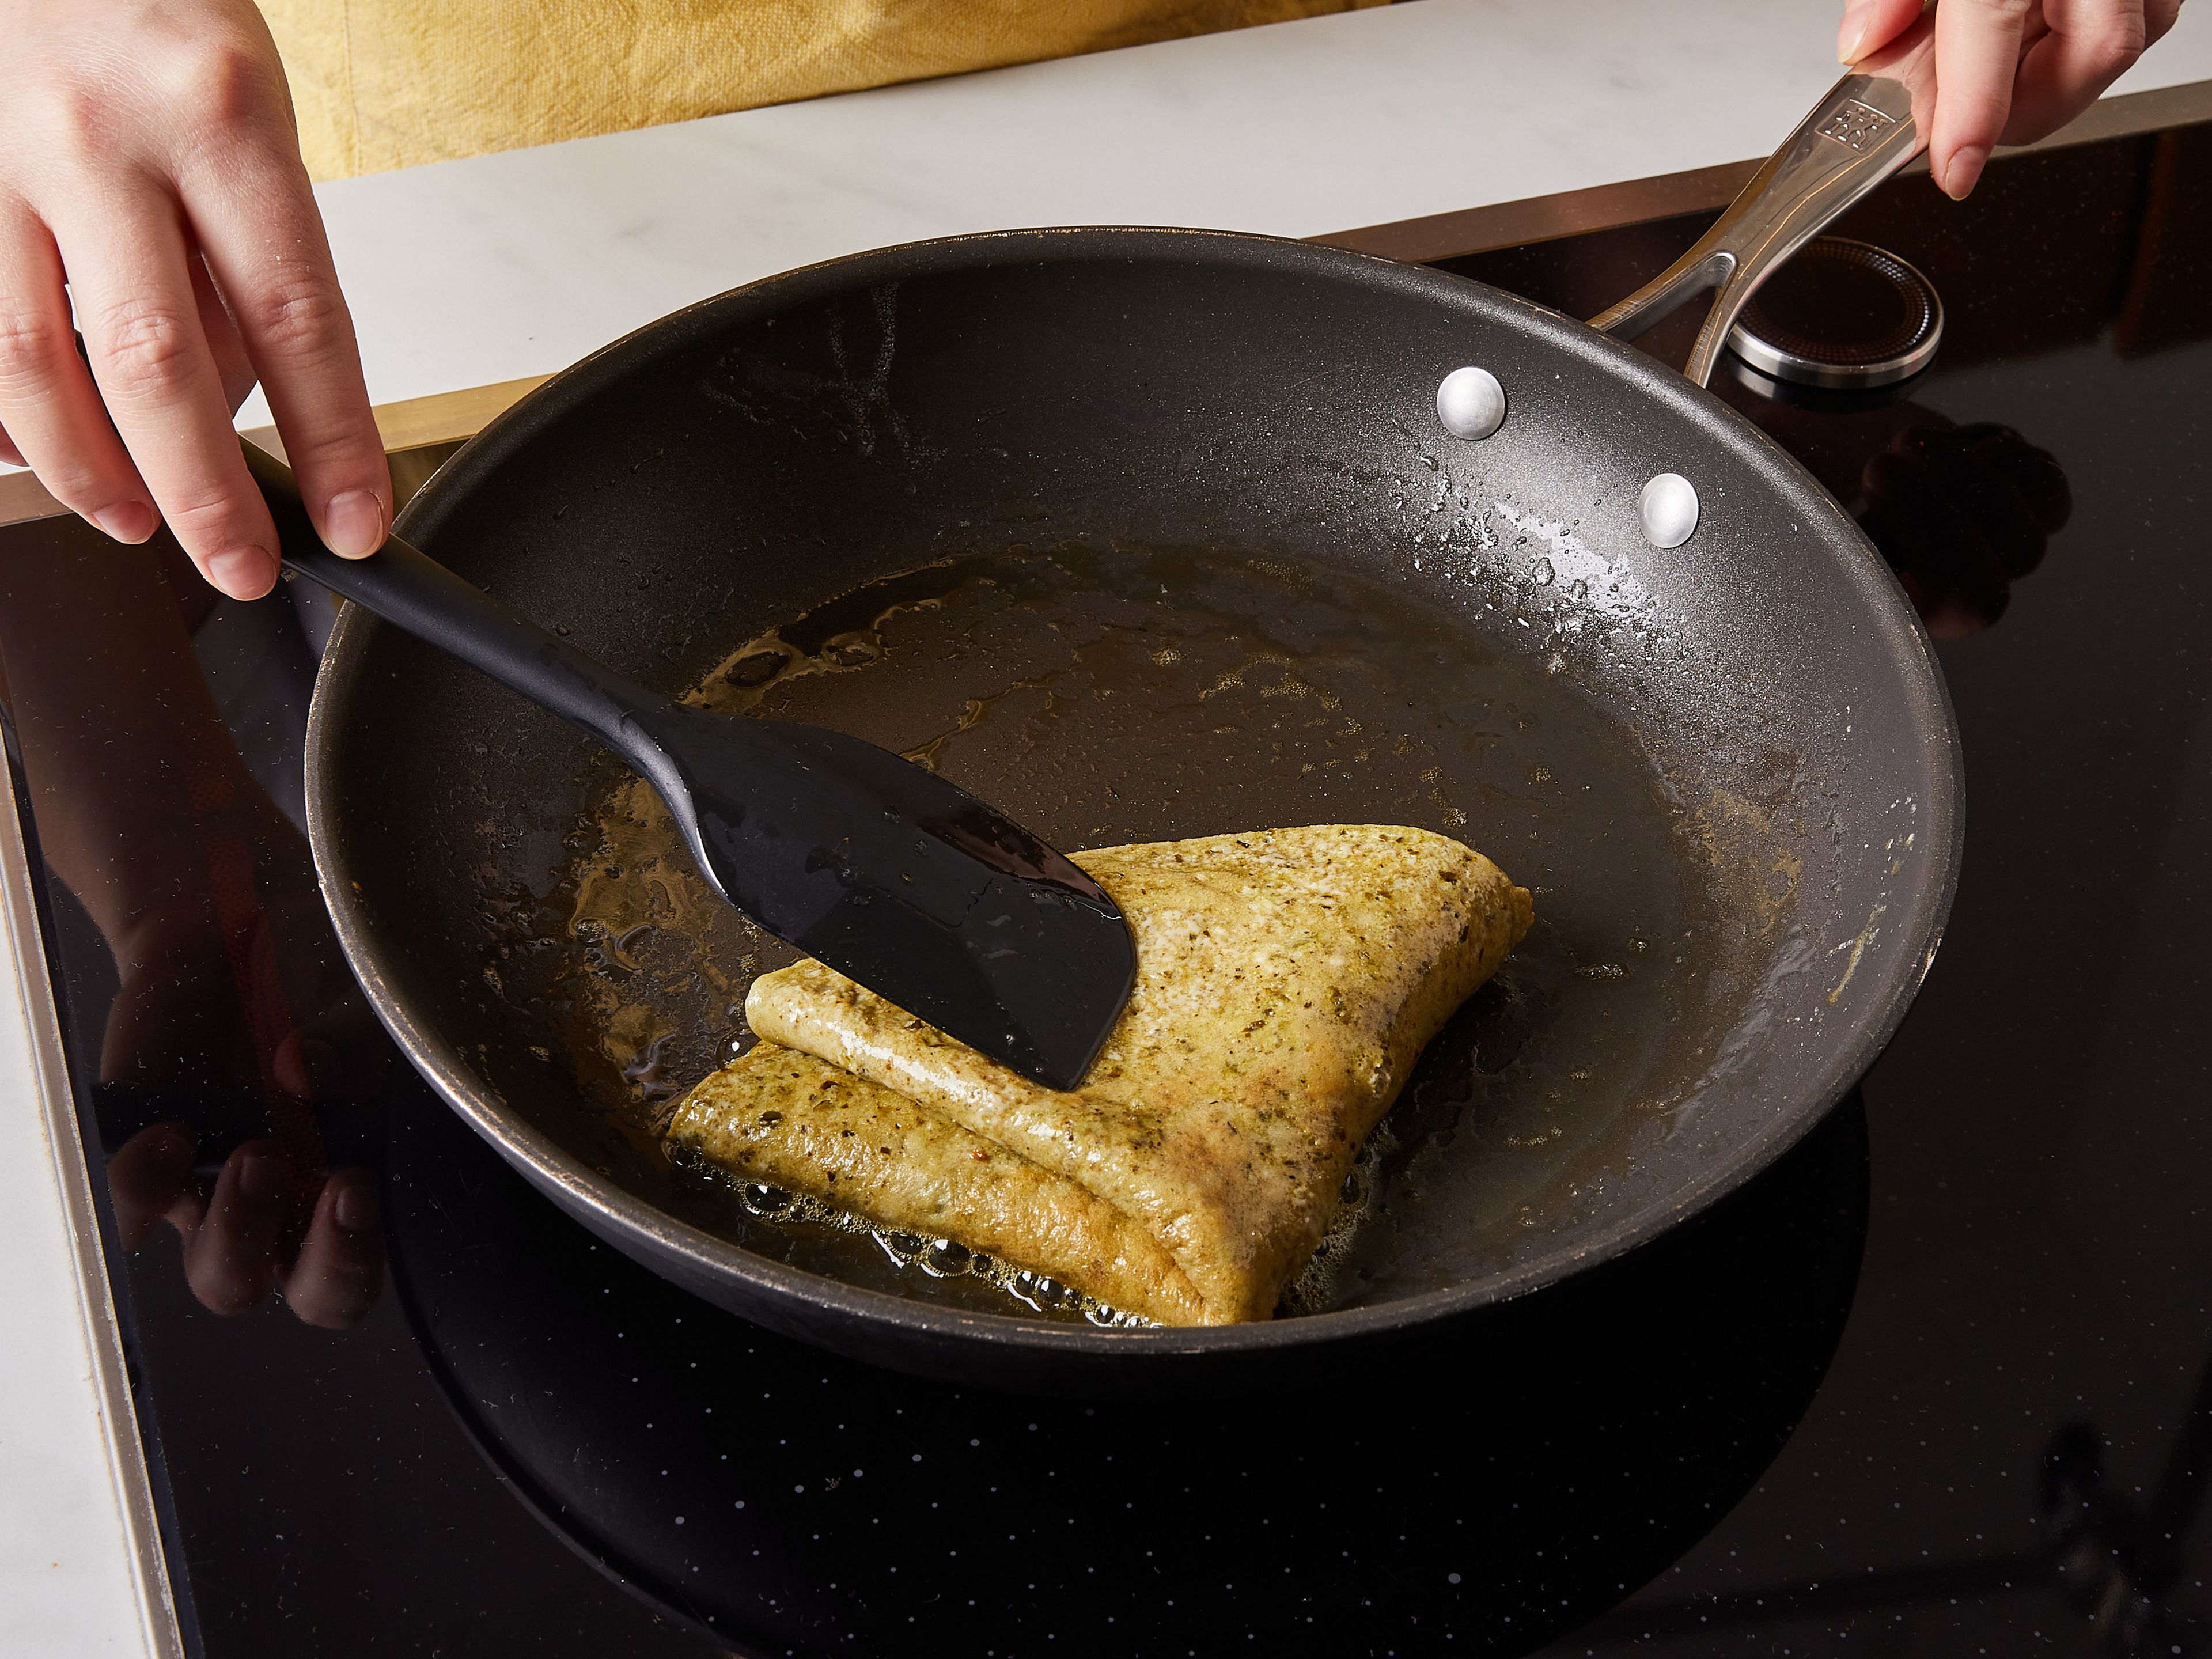 Die Eier in eine Schüssel geben. Pesto hinzufügen und beides mit einem Schneebesen verquirlen. Mit Salz und Pfeffer würzen. Restliche Butter in die Pfanne geben. Sobald sie geschmolzen ist, die Eier in die Pfanne gießen und ca. 3 Min. stocken lassen, oder bis die Unterseite des Omelettes fest wird. Das Omelette zusammenklappen und ca. 1 Min. weiterbraten.